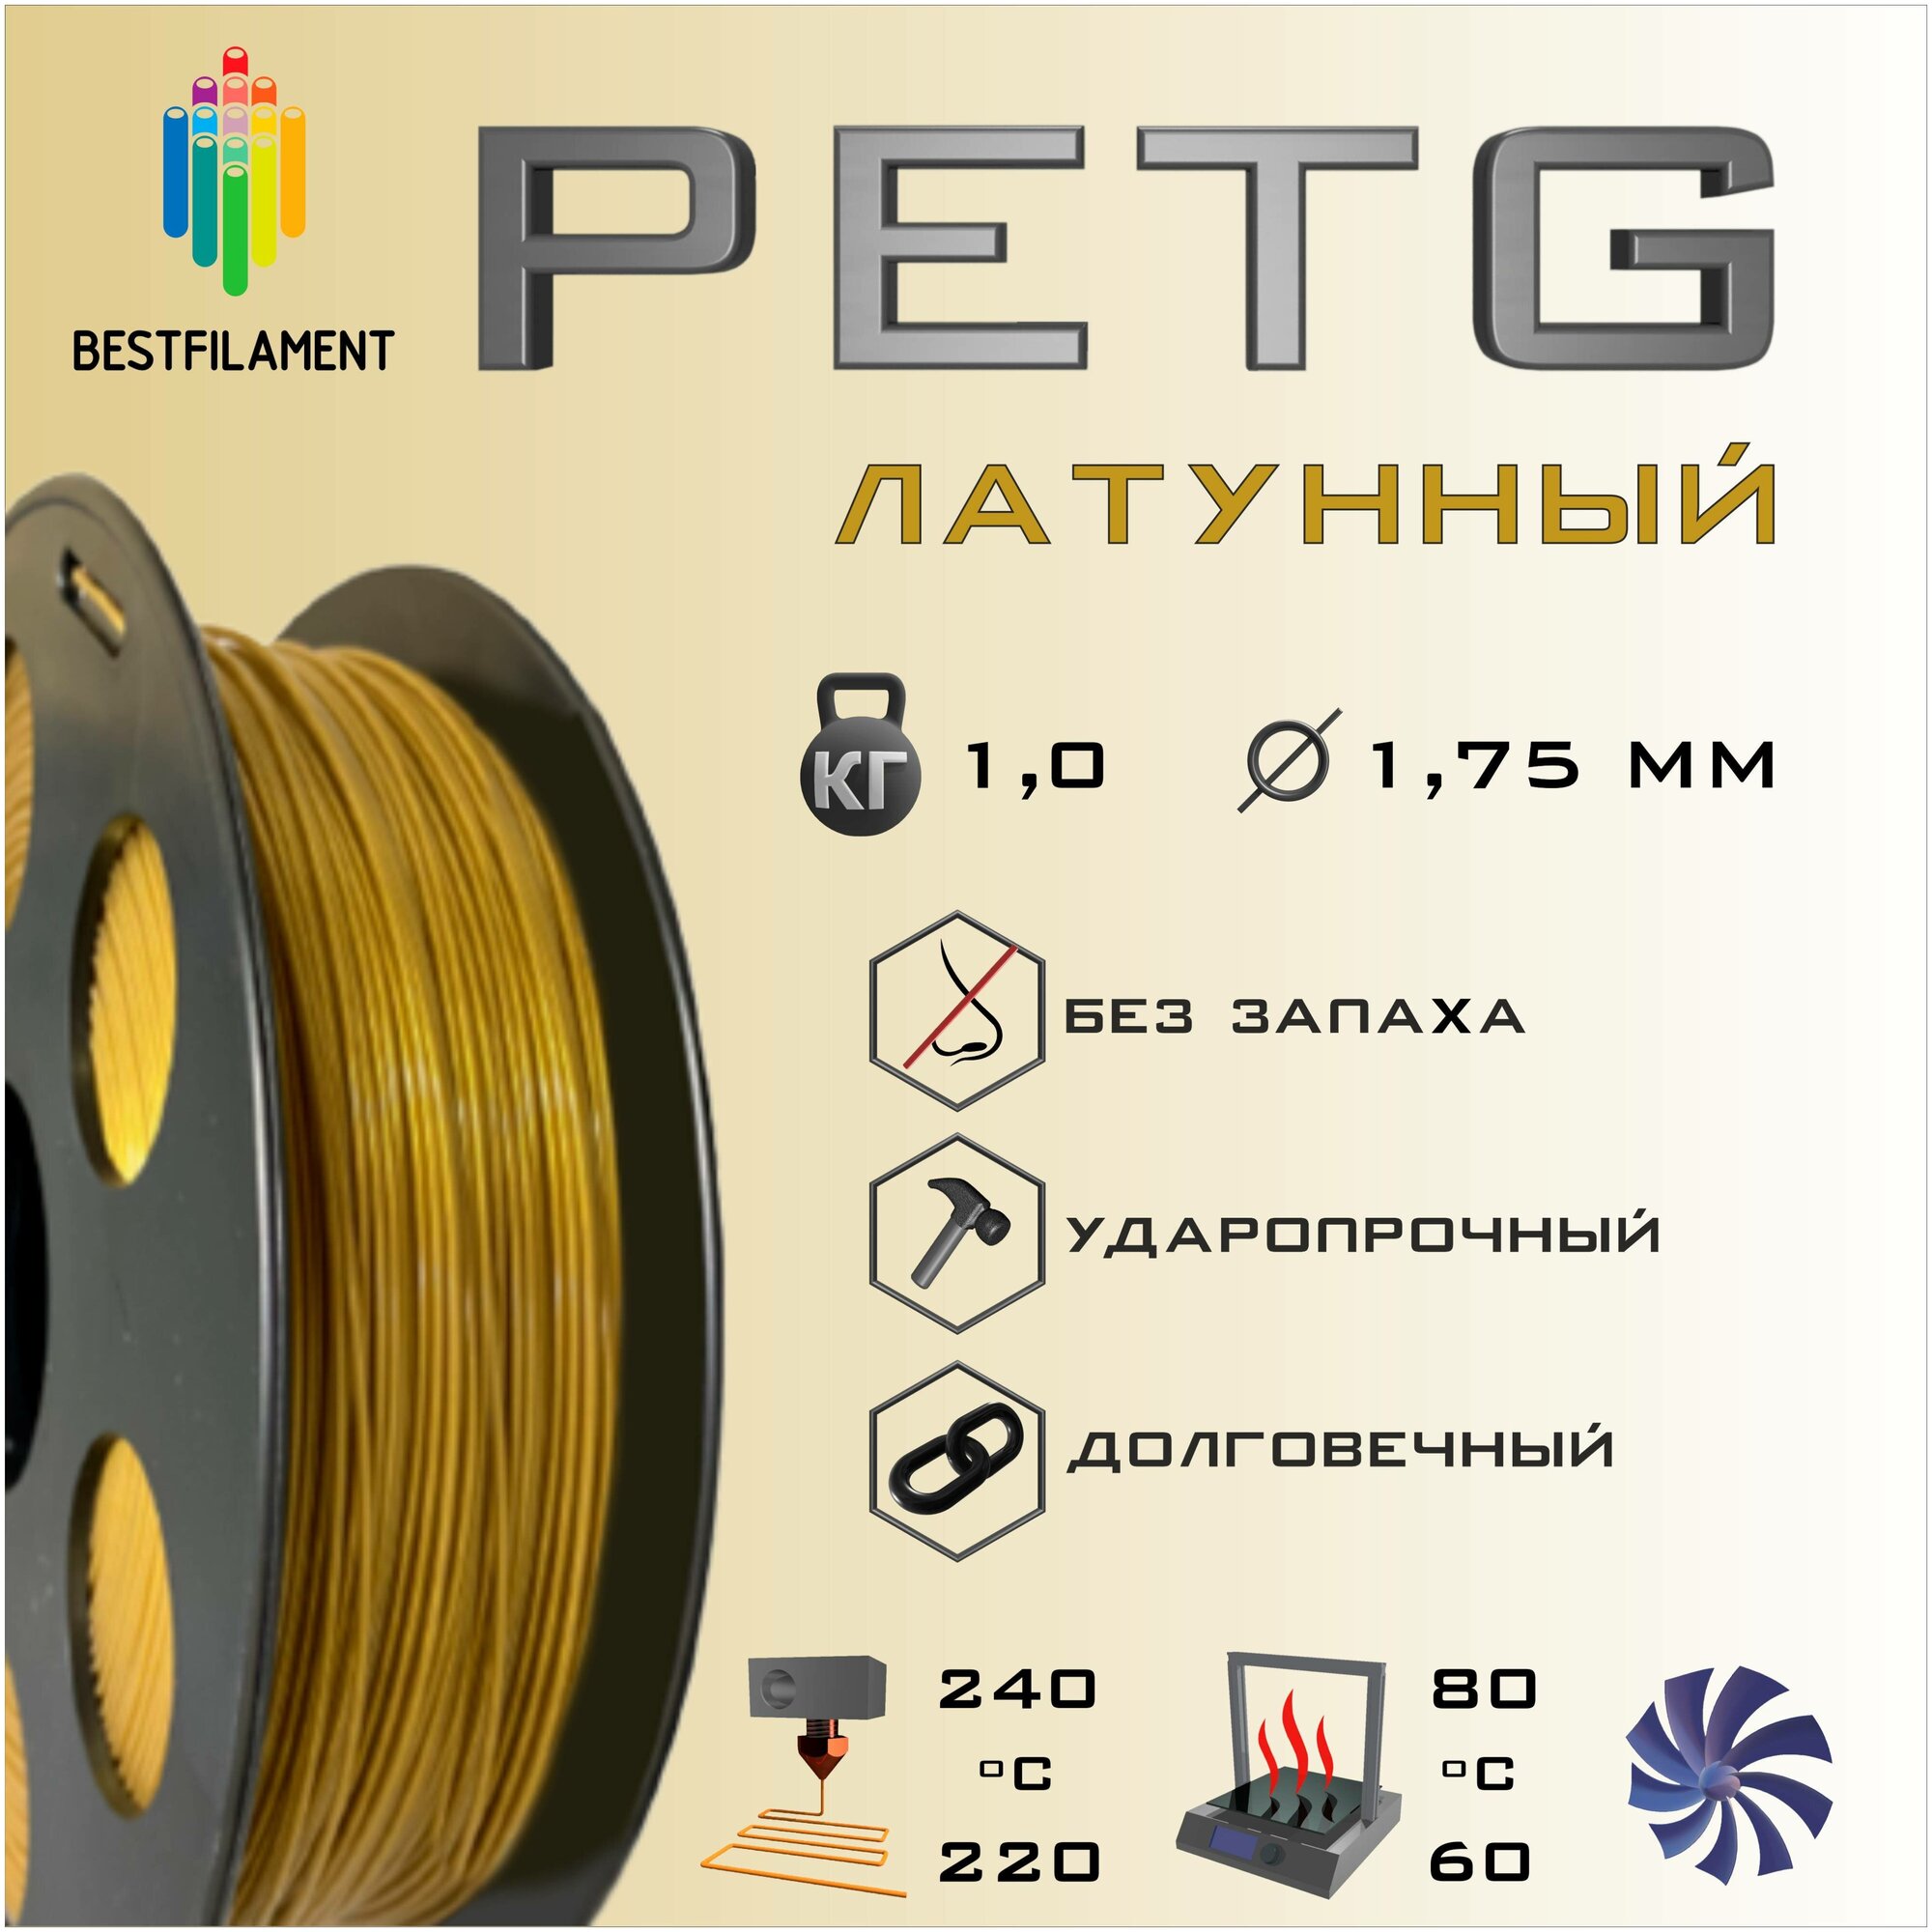 PETG Латунный 1000 гр. 1.75 мм пластик Bestfilament для 3D-принтера